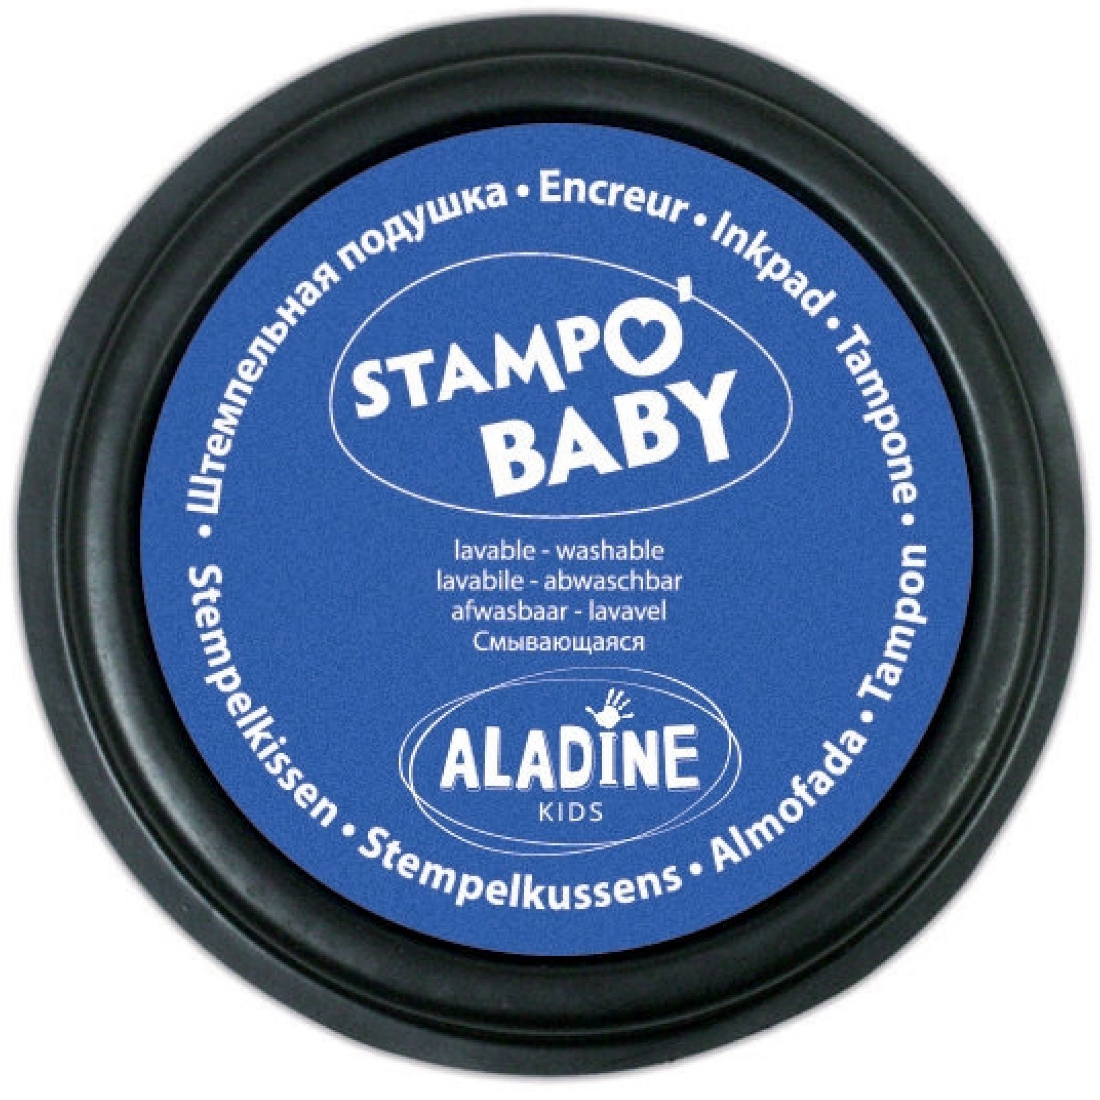 Pack Carimbos Stampo Baby Animais da Quinta aladine